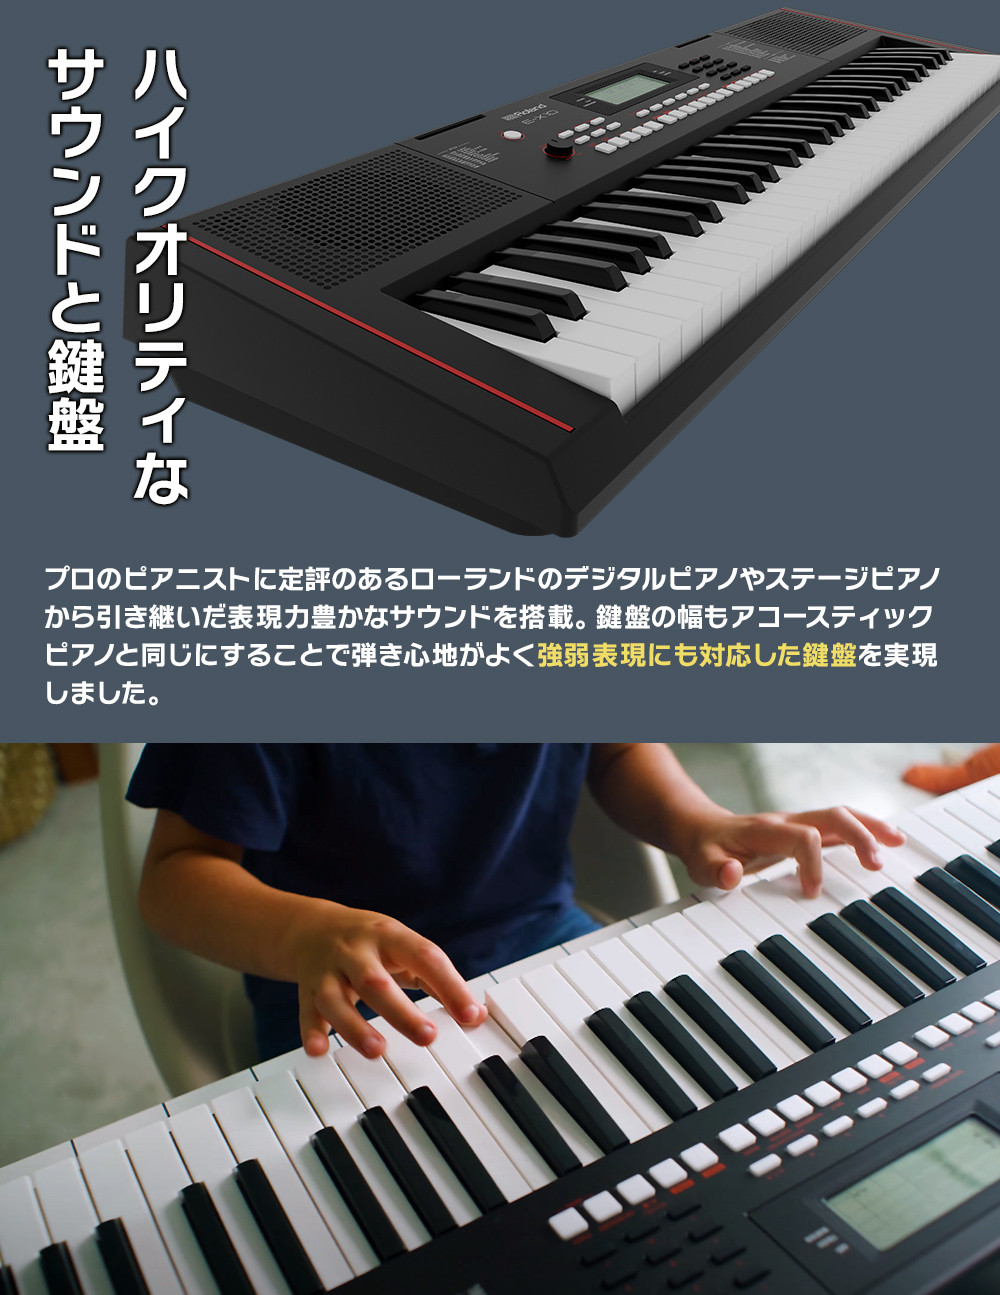 【在庫あり】 Roland E-X10 61鍵盤 ローランド Arreanger Keybord